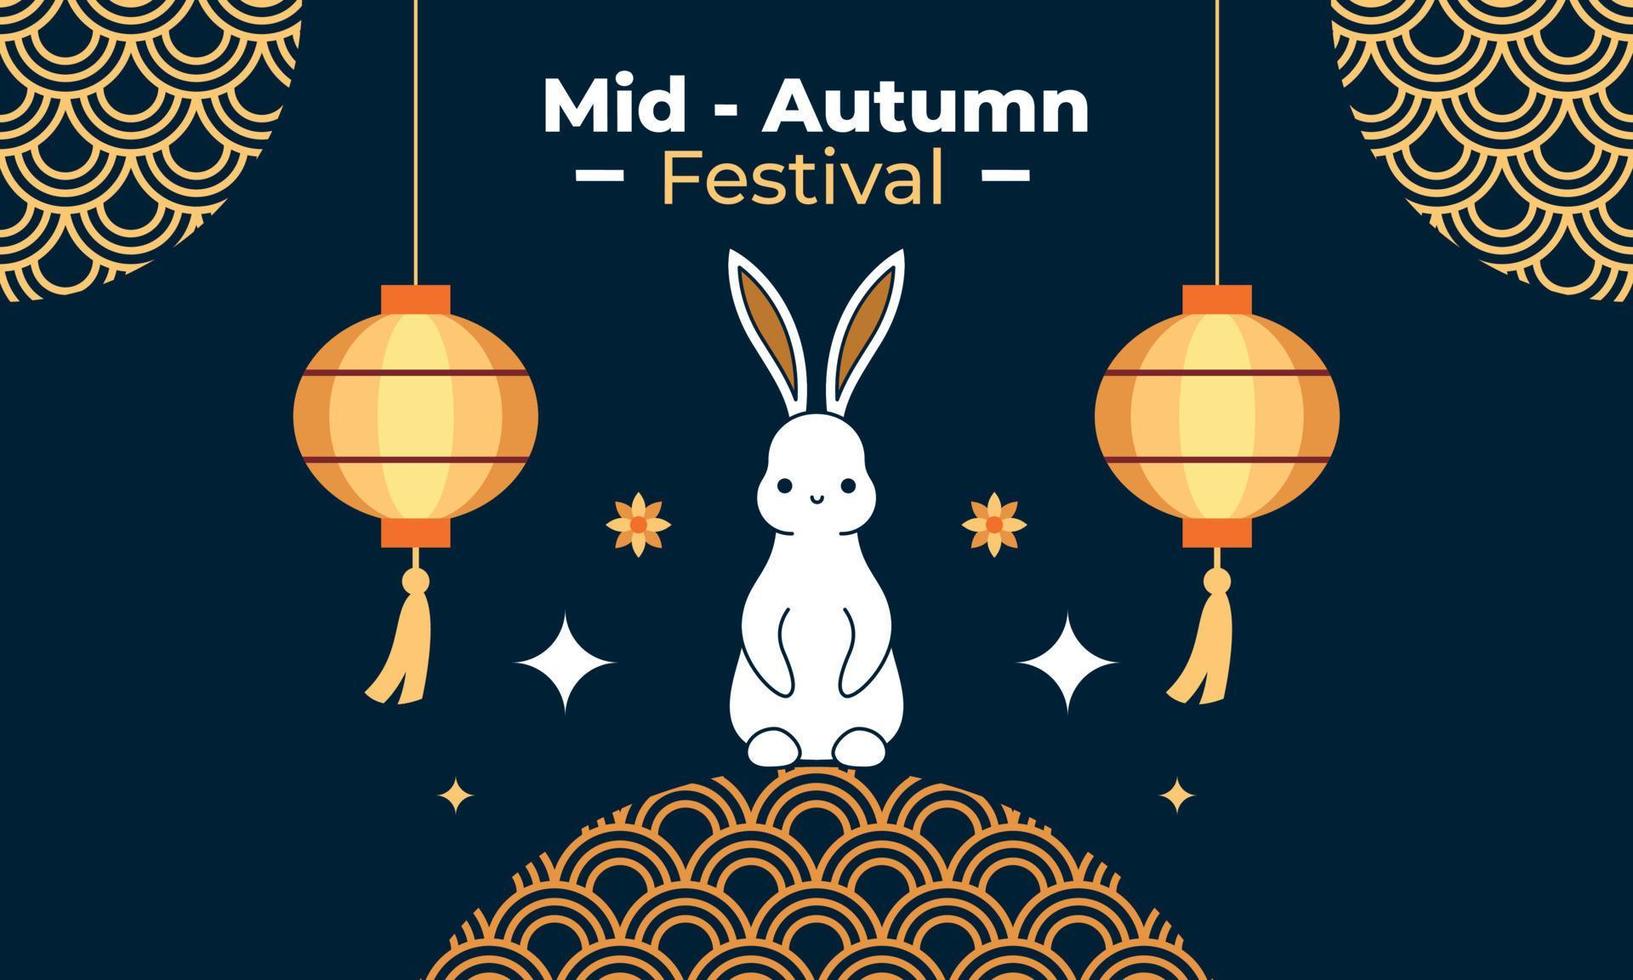 ilustración de celebración del festival del medio otoño vector